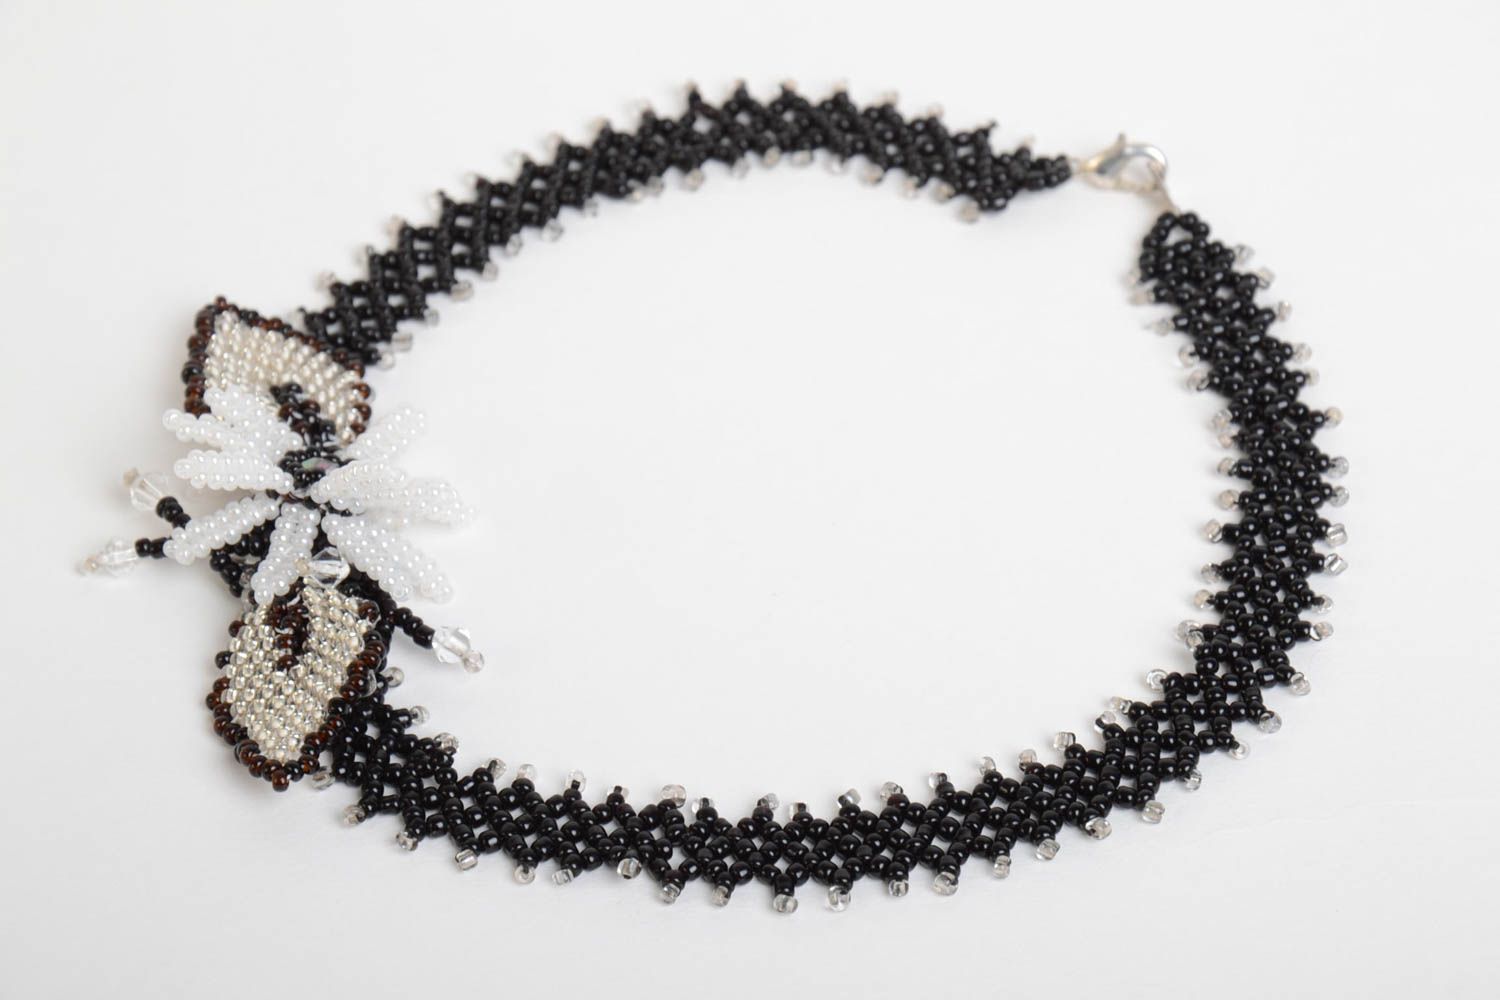 Ожерелье из бисера ручной работы красивое стильное ажурное женское с бантиком фото 2